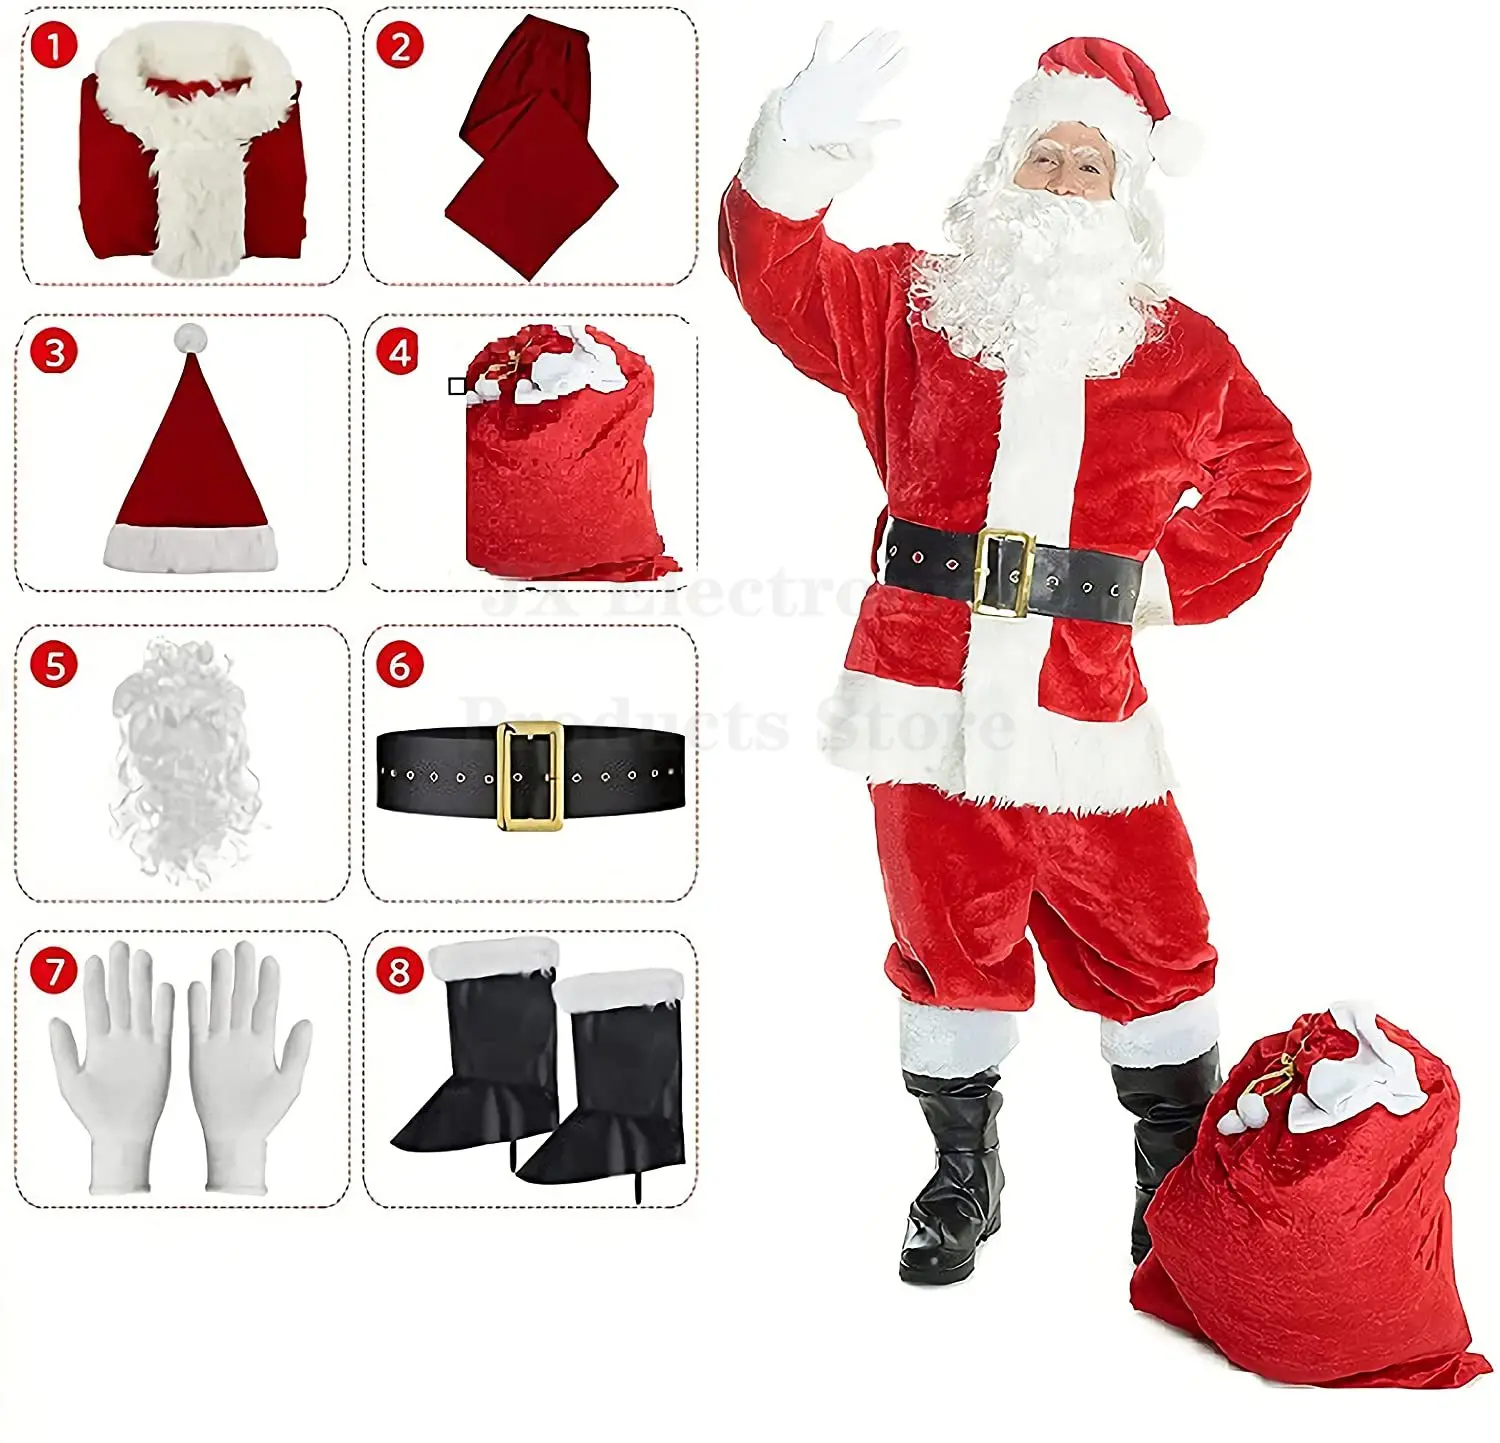 Новогодний костюм Санта-Клауса, рождественская вечеринка, ролевые игры, роскошный, классический и удобный, длинный пуховый костюм на заказ от фабрики